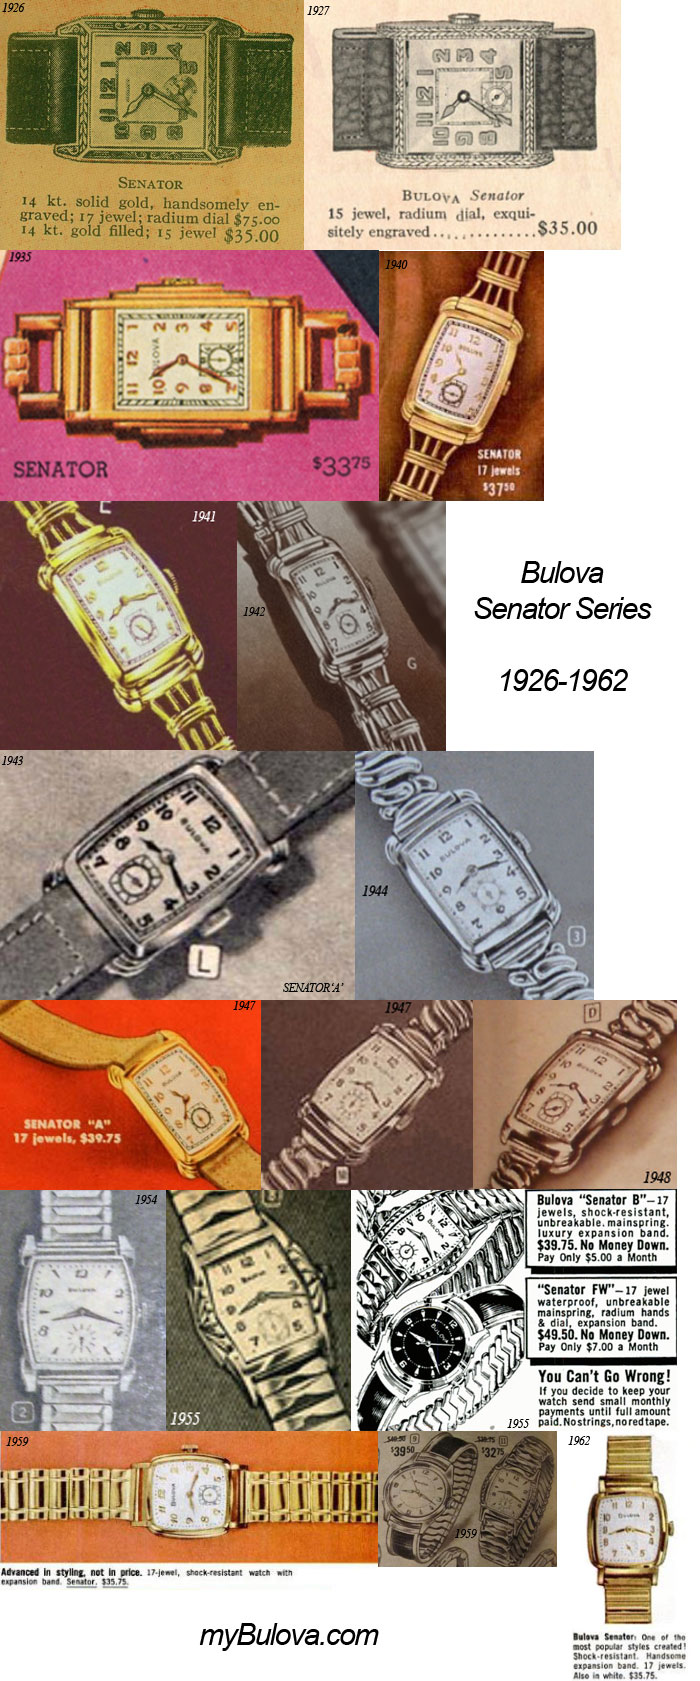 Bulova Senator Series 1926 - 1962